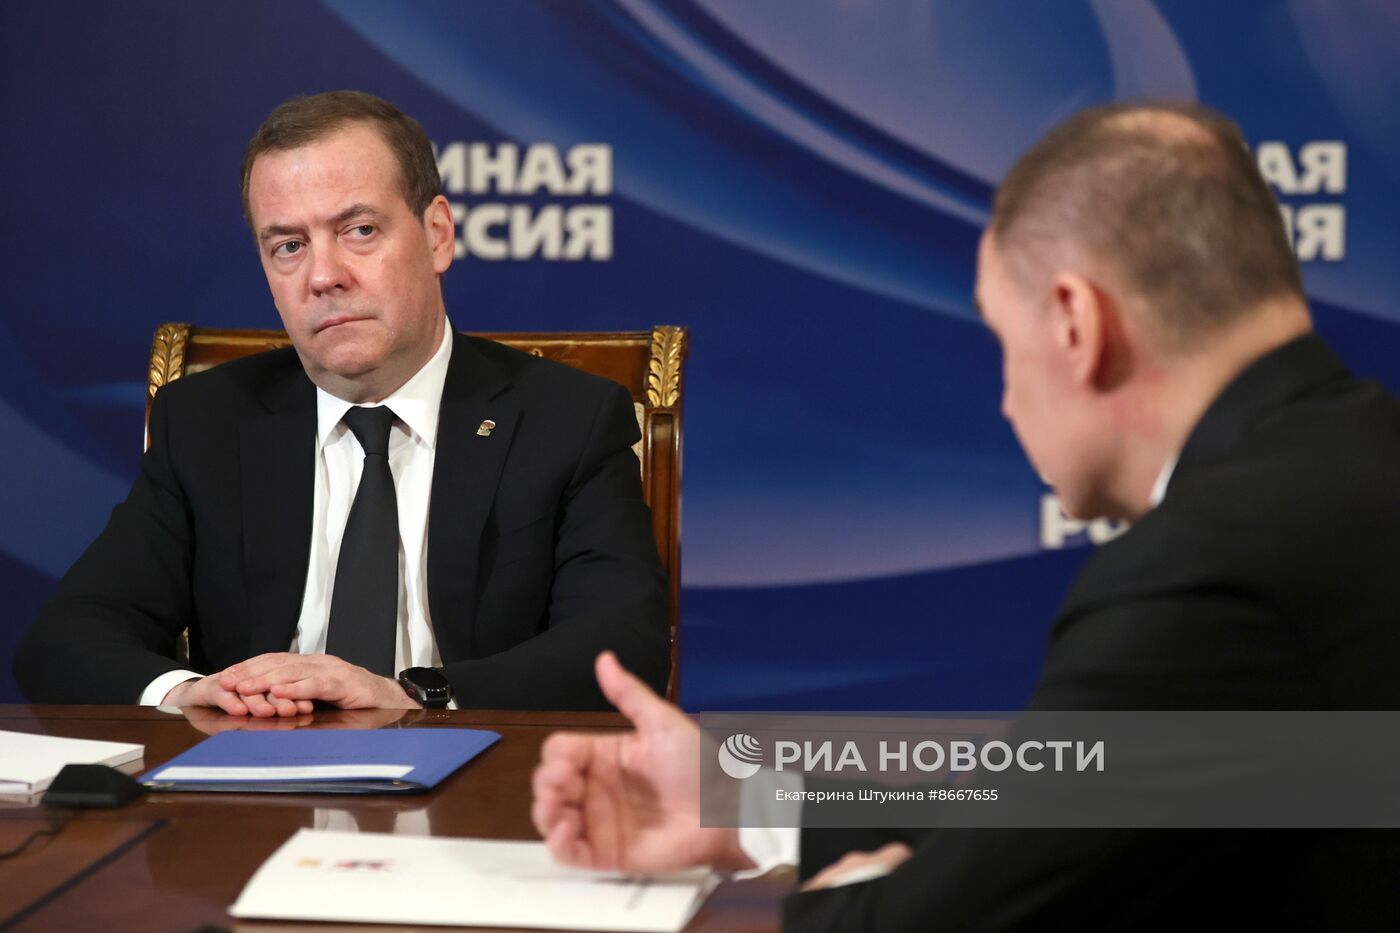 Зампред Совбеза Дмитрий Медведев провел встречу с главой Республики Марий Эл Юрием Зайцевым